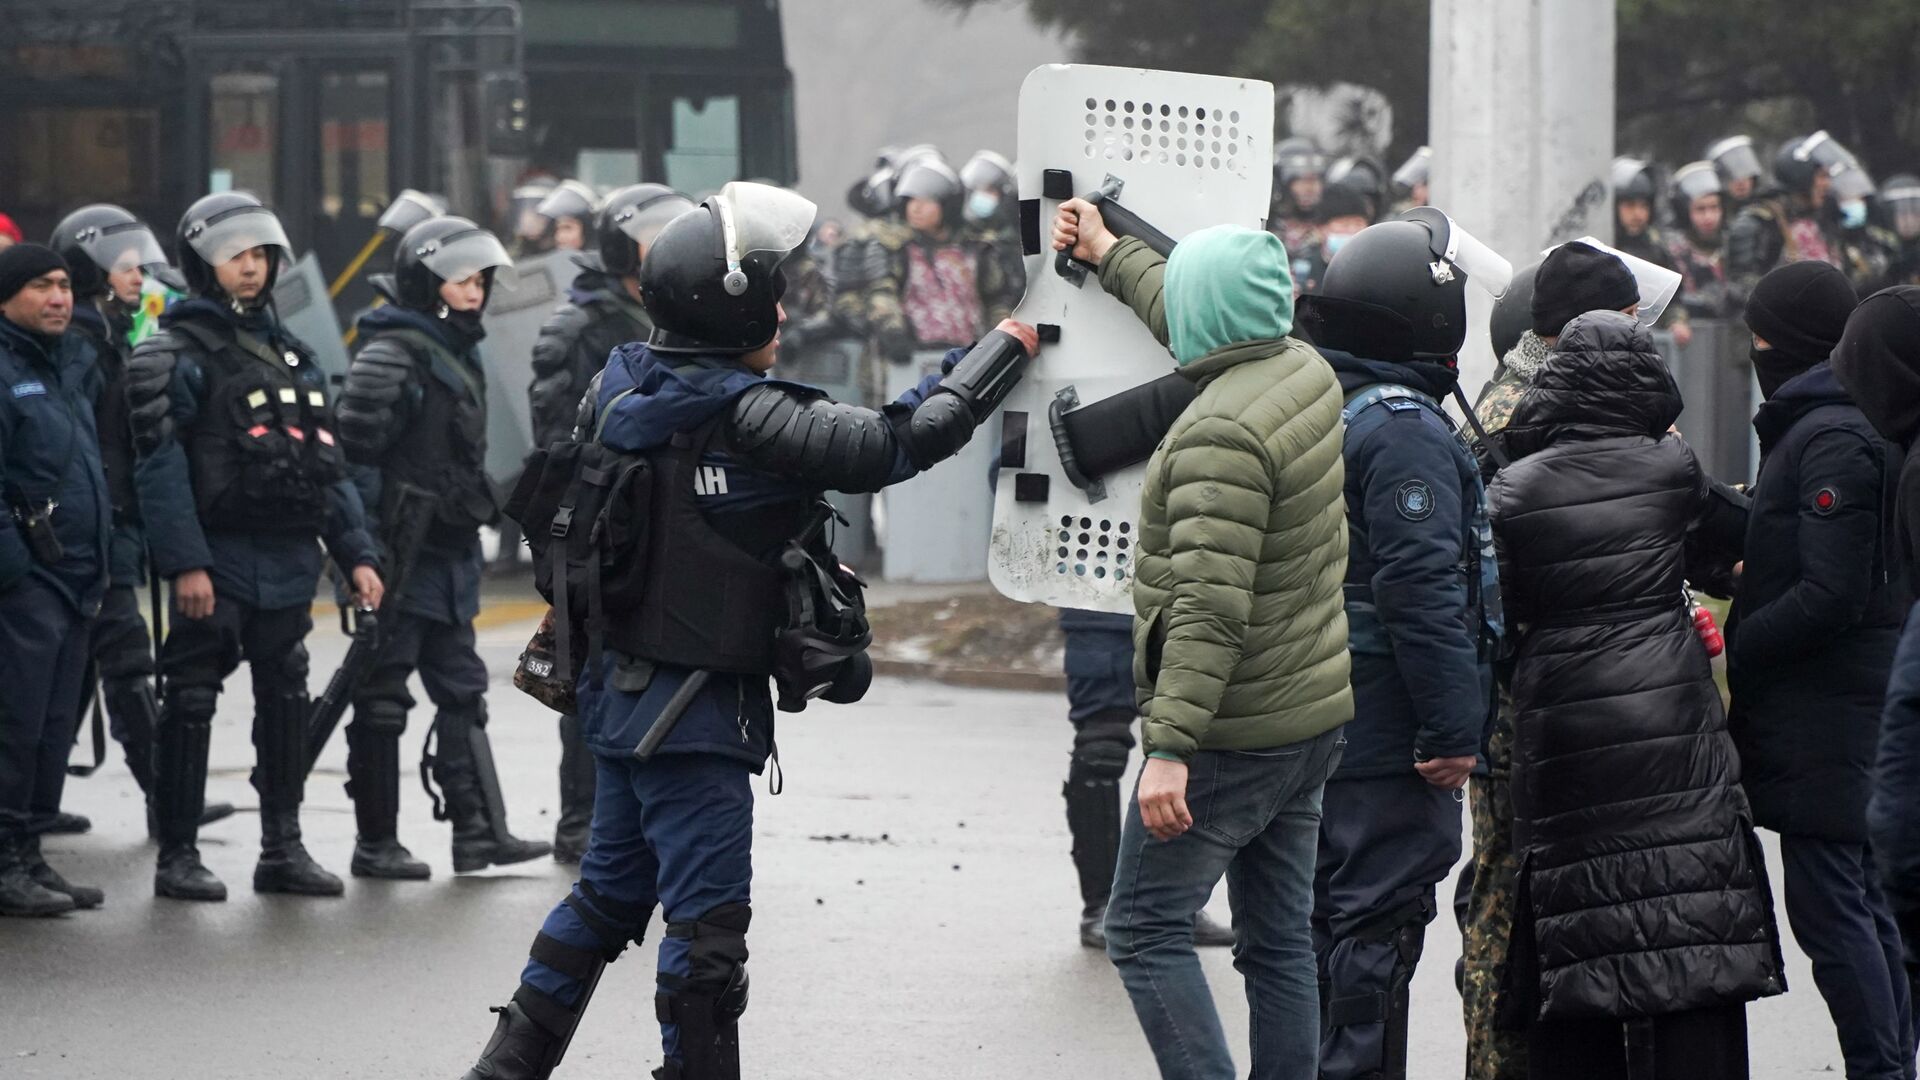 Демонстрант возвращает щит сотруднику ОМОНа во время акции протеста в Алматы, Казахстан, в среду, 5 января 2022 г.  - Sputnik Қазақстан, 1920, 22.01.2022